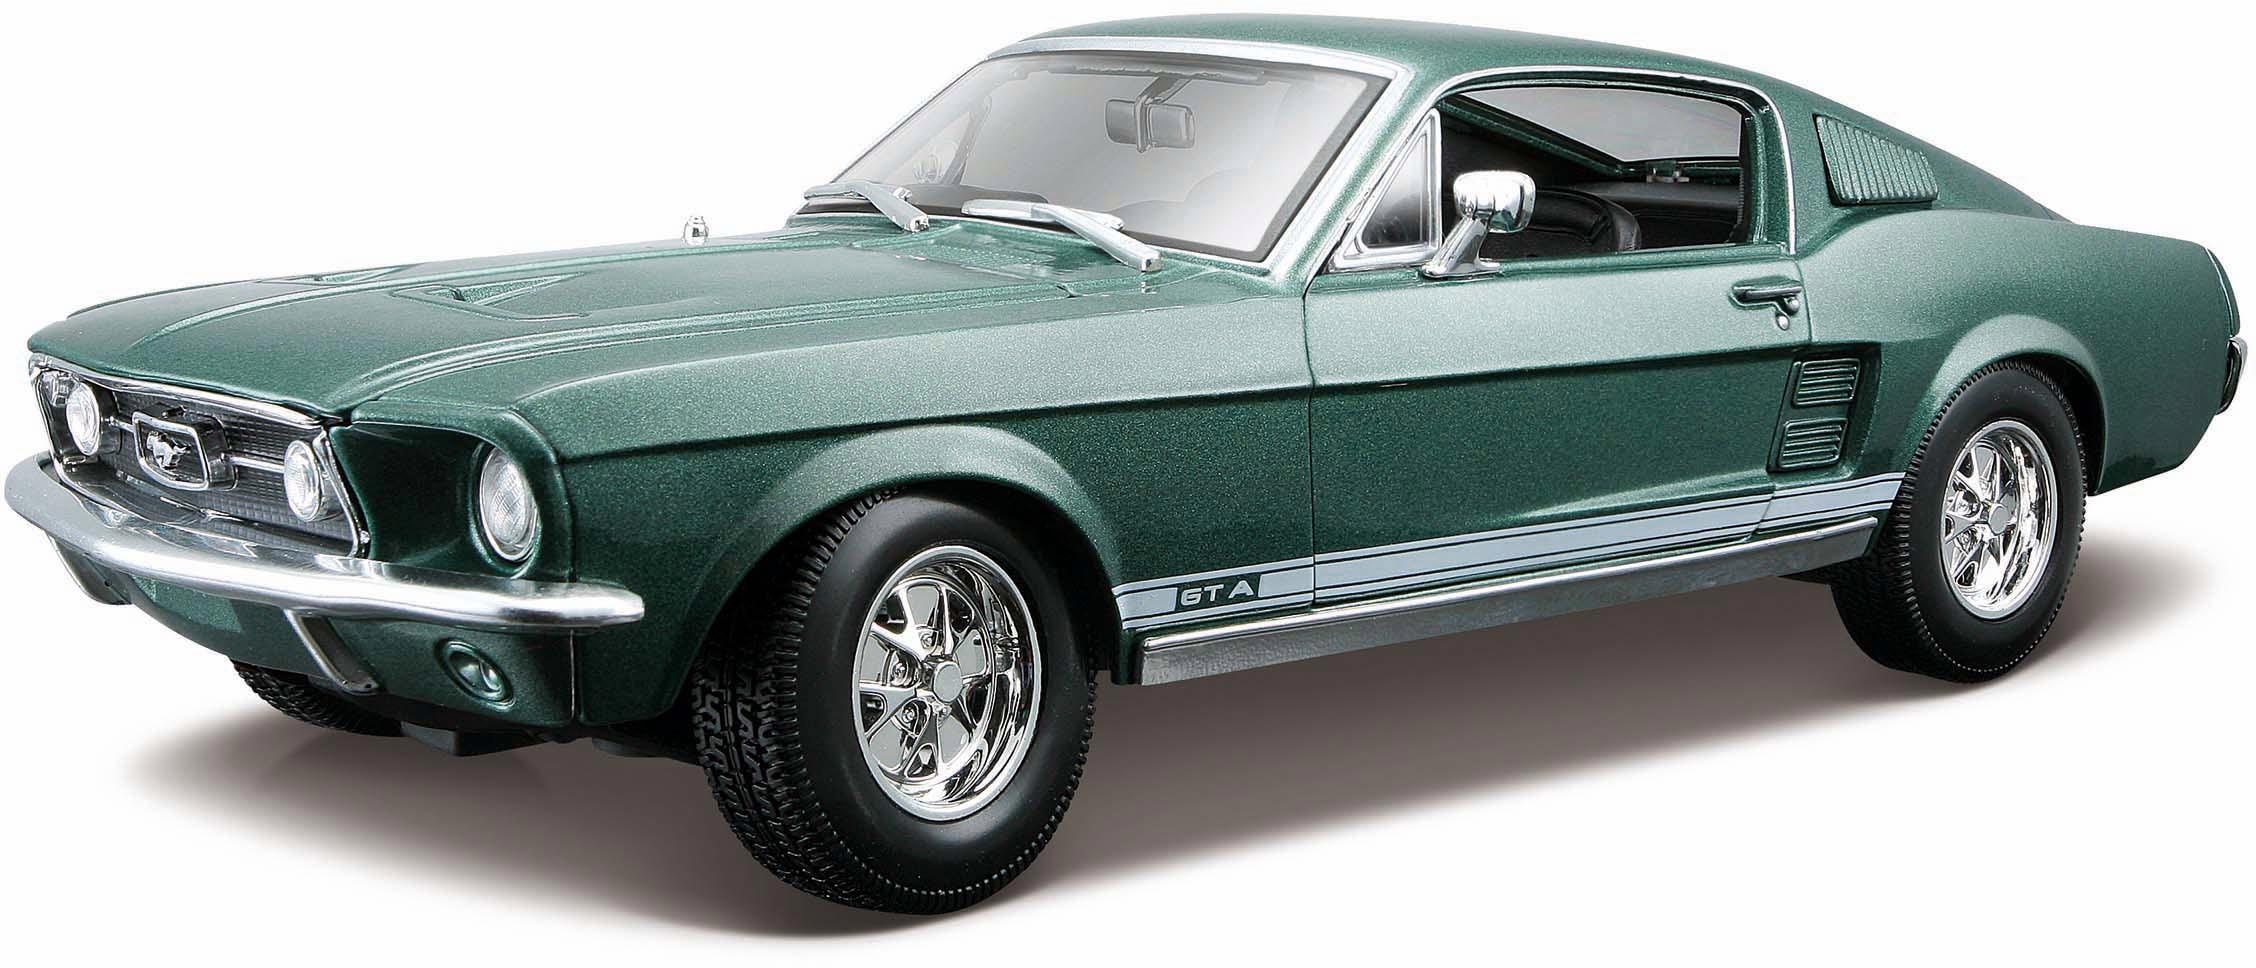 Sammlerauto »Ford Mustang GTA Fliessheck67, 1:18, grün«, 1:18, aus Metallspritzguss